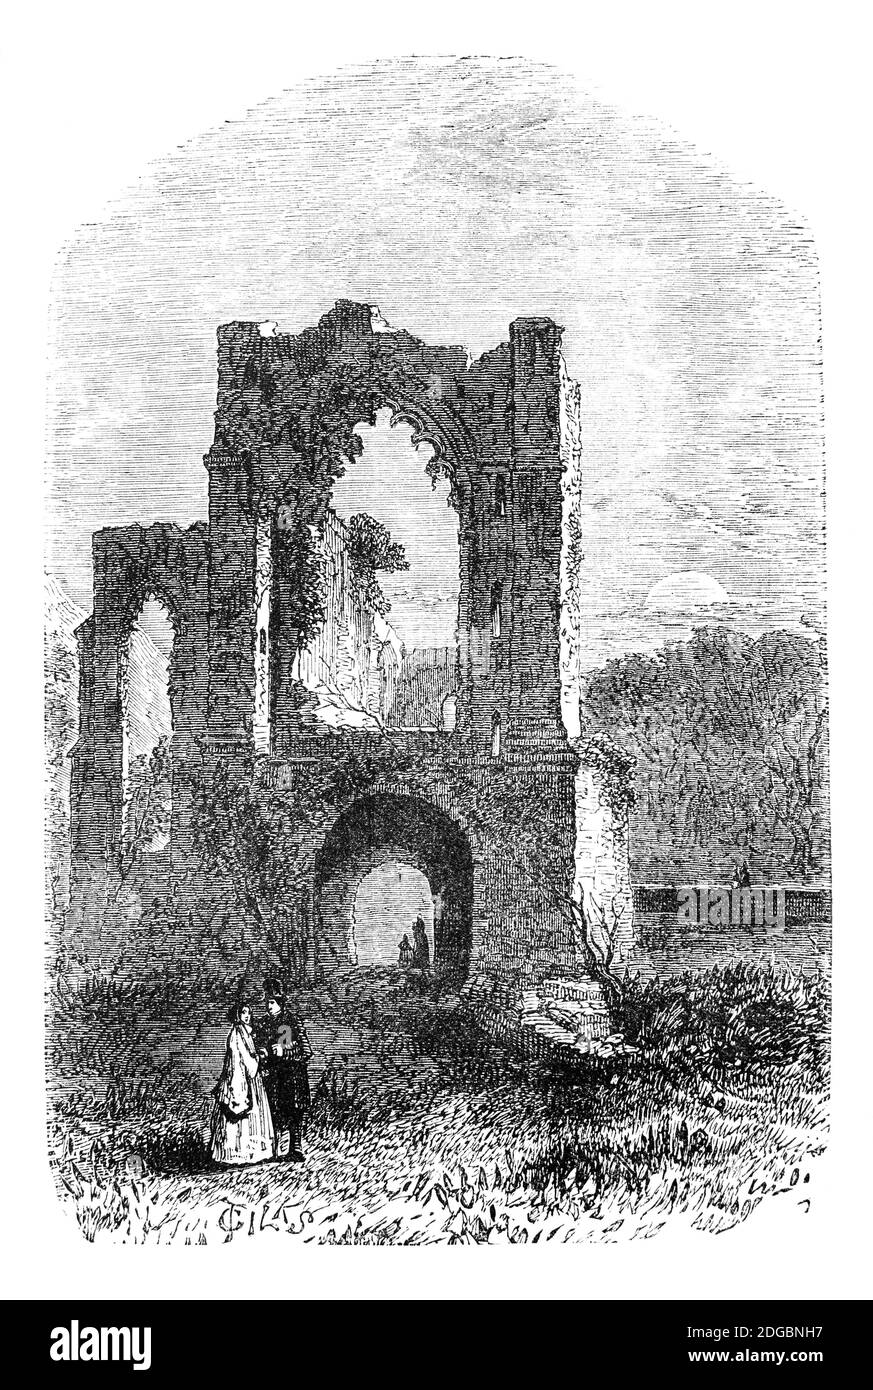 Vue de la fin du XIXe siècle de l'abbaye de Furness gothique en ruines, près de Barrow-in-Furness, Cumbria, Angleterre fondée en 1123. Il est devenu le deuxième monastère cistercien le plus riche et le plus puissant du pays, bien qu'il soit situé dans ce qui était alors un territoire frontalier éloigné où ils se trouvaient entre les Écossais et les Anglais. Quand Robert le Bruce envahit l'Angleterre, pendant le Grand RAID de 1322, l'abbé a payé pour le soutenir, plutôt que de risquer de perdre la richesse et la puissance de l'abbaye. L'abbaye a été démantelé et détruite en 1537 pendant la réforme anglaise sous les ordres de Henri VIII Banque D'Images